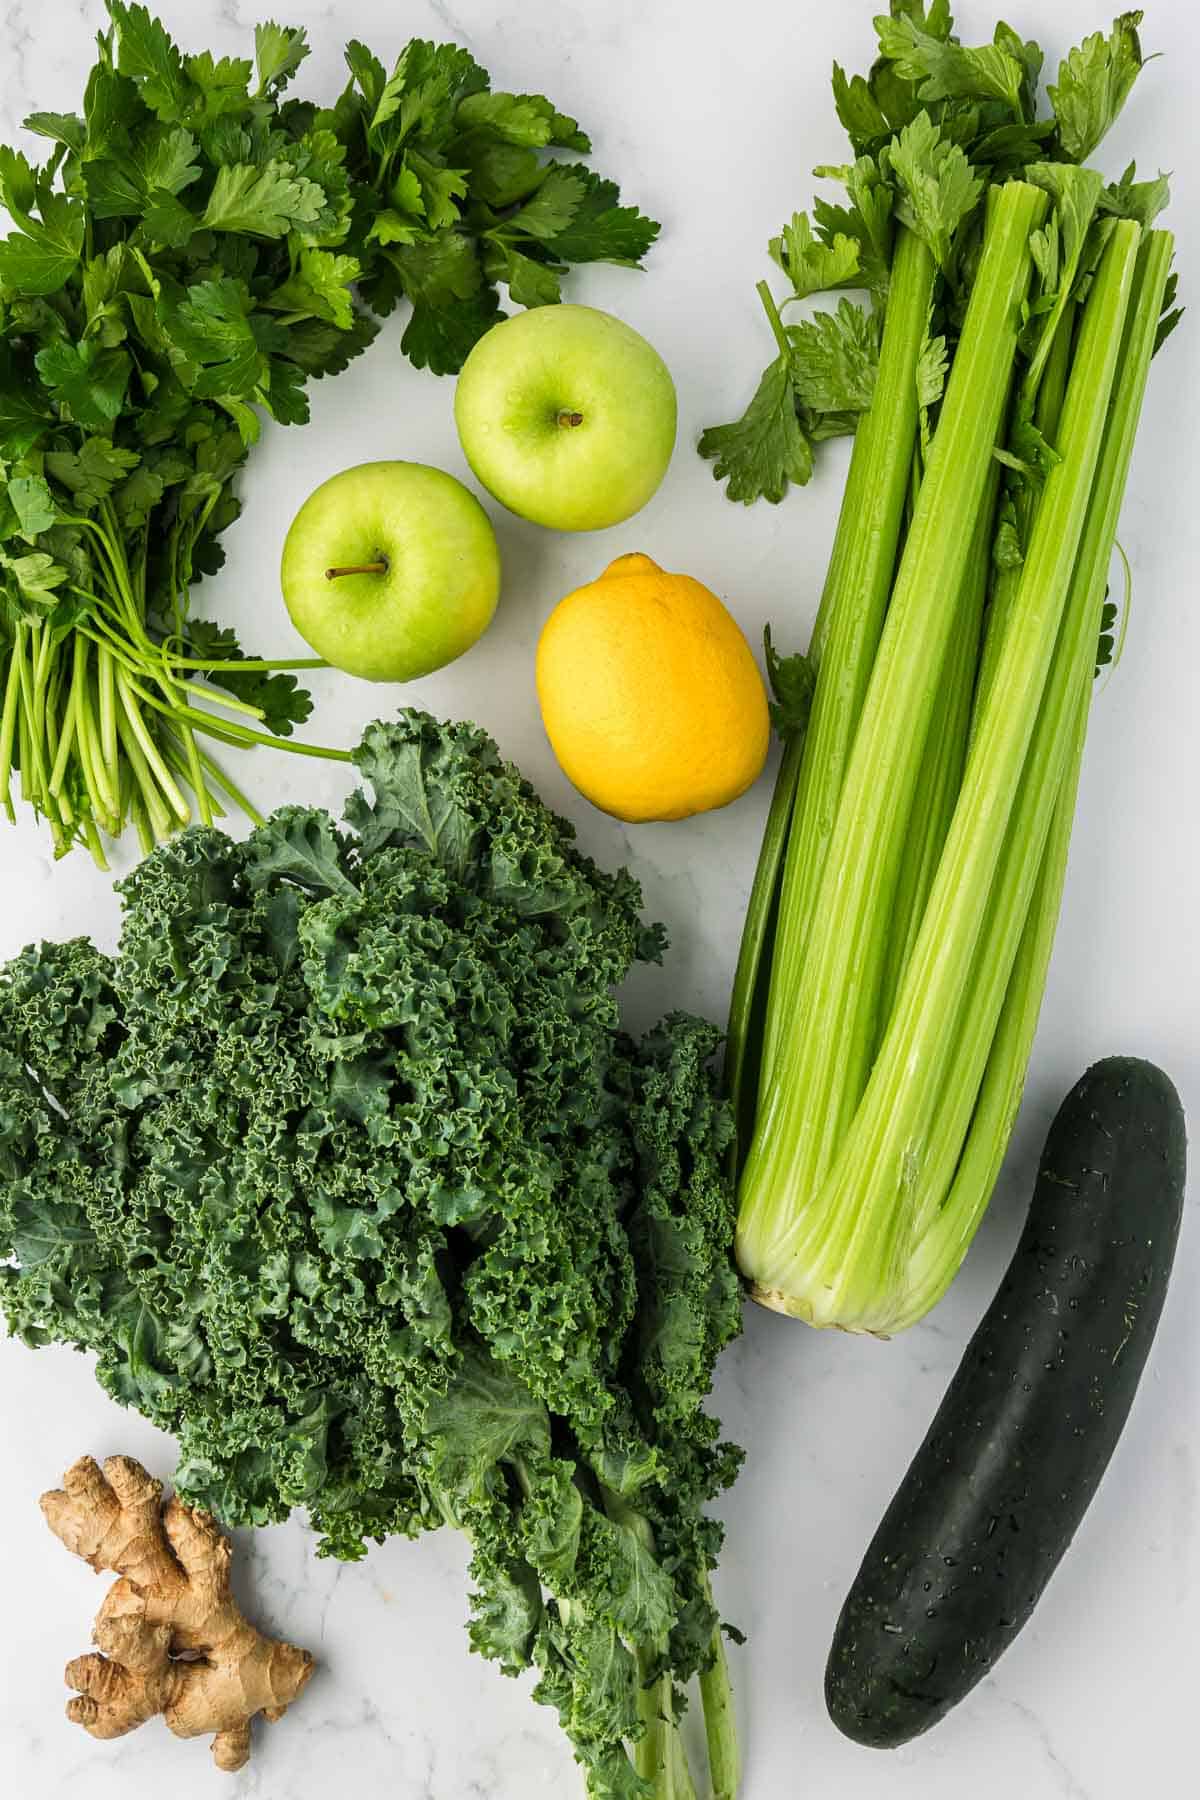 ingredients to make vegetable juice